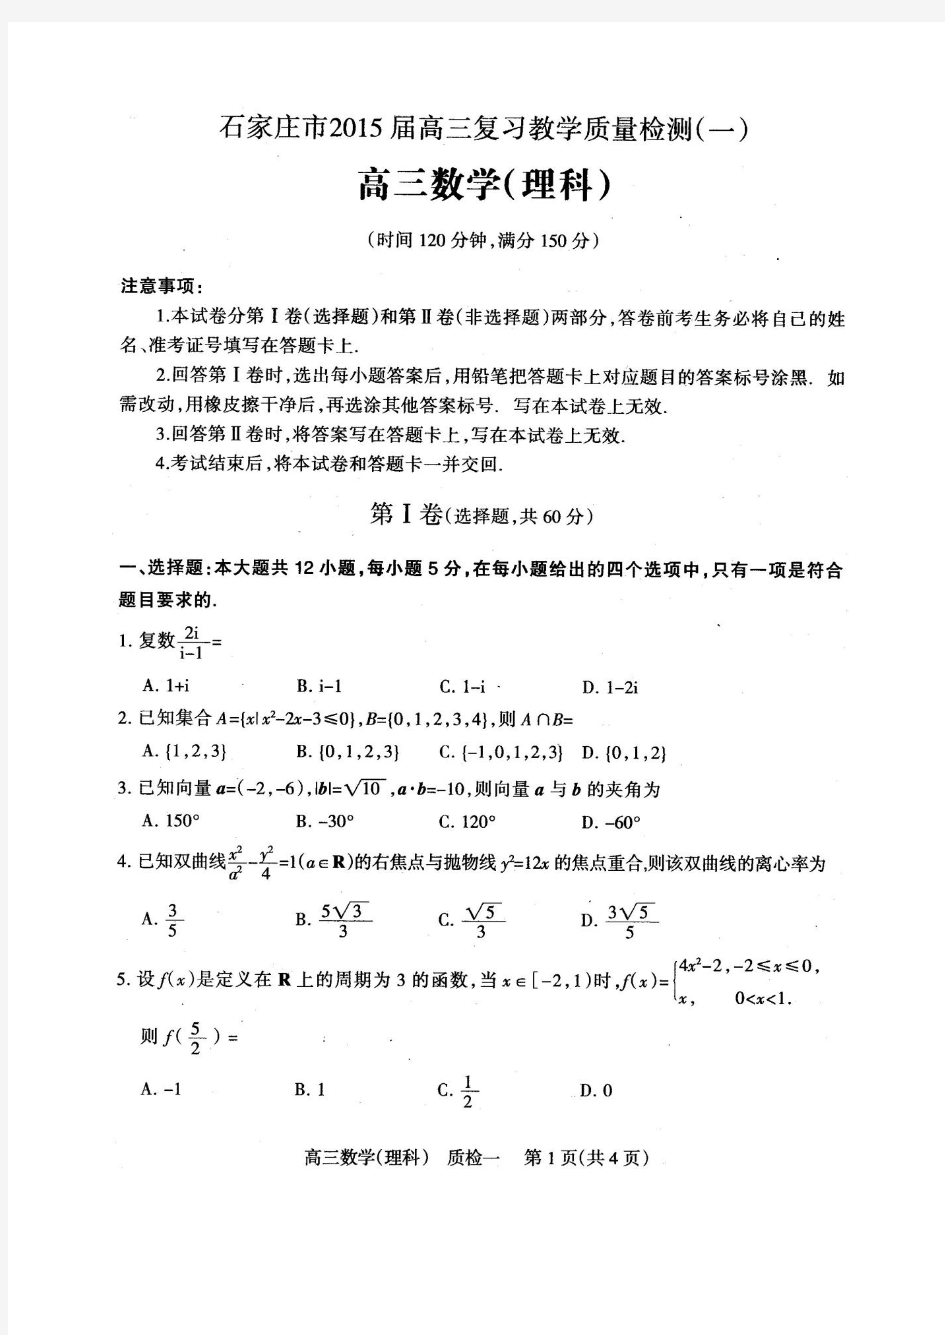 2015年石家庄高三质检一考试理科数学试卷及答案